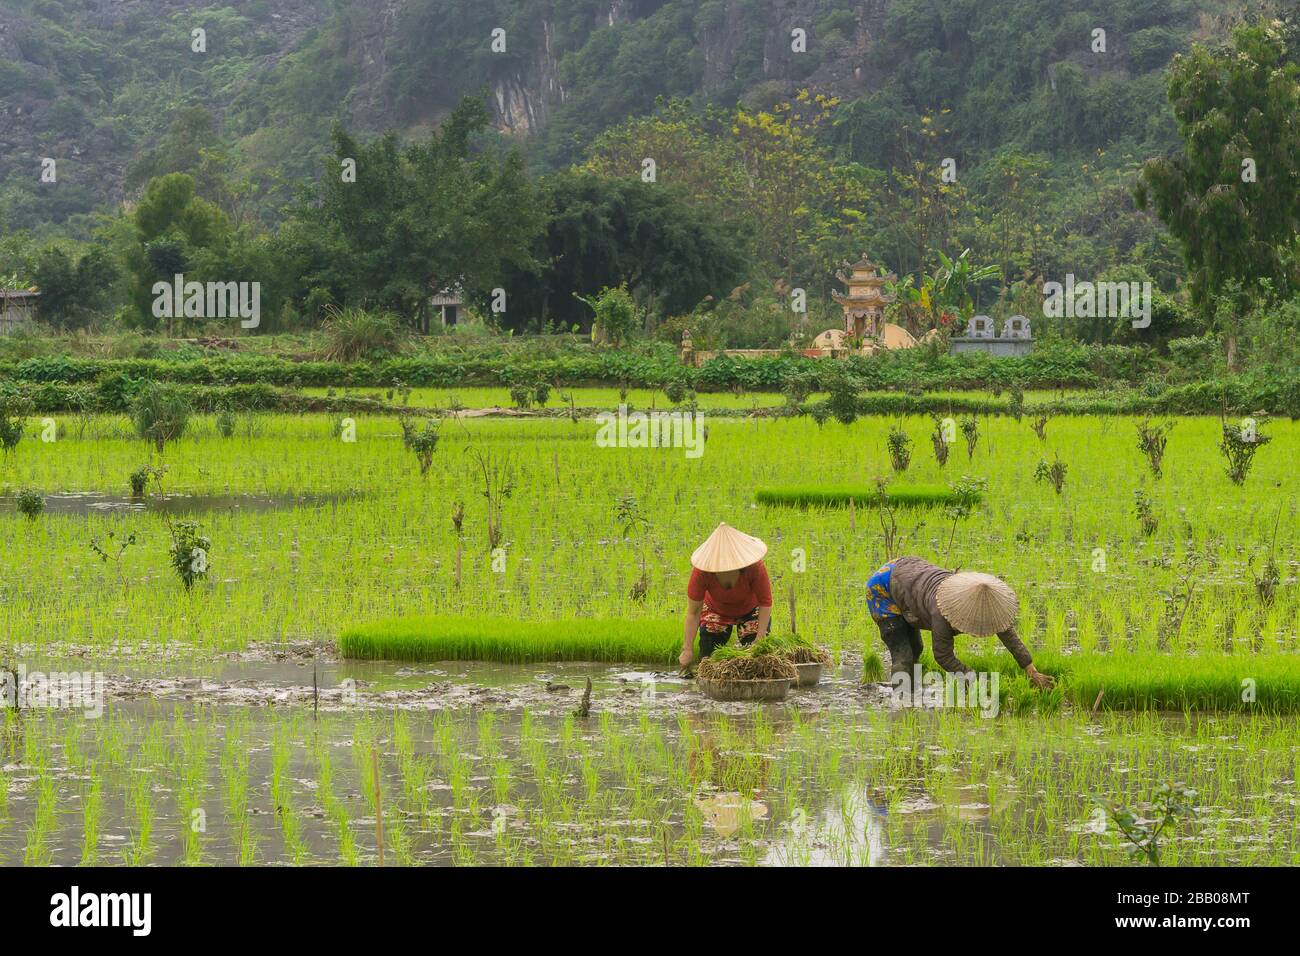 Champs de riz Tam COC Vietnam - femmes travaillant dans des champs de riz dans la province de Tam COC, Ninh Binh, Vietnam. Asie du Sud-est. Banque D'Images